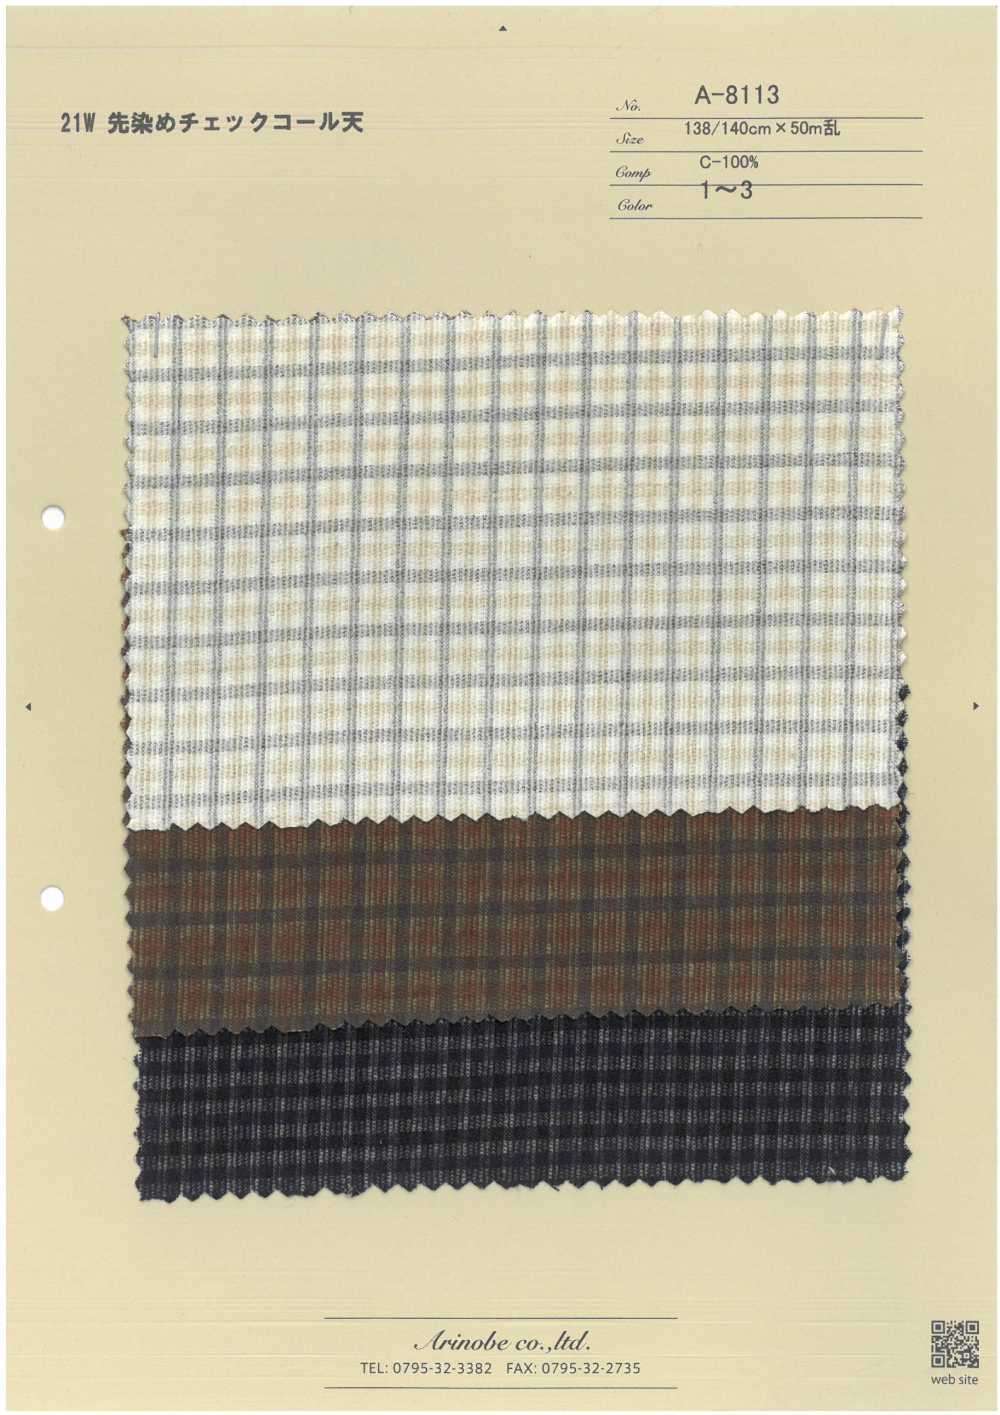 A-8113 21W Garngefärbter, Karierter Cord[Textilgewebe] ARINOBE CO., LTD.